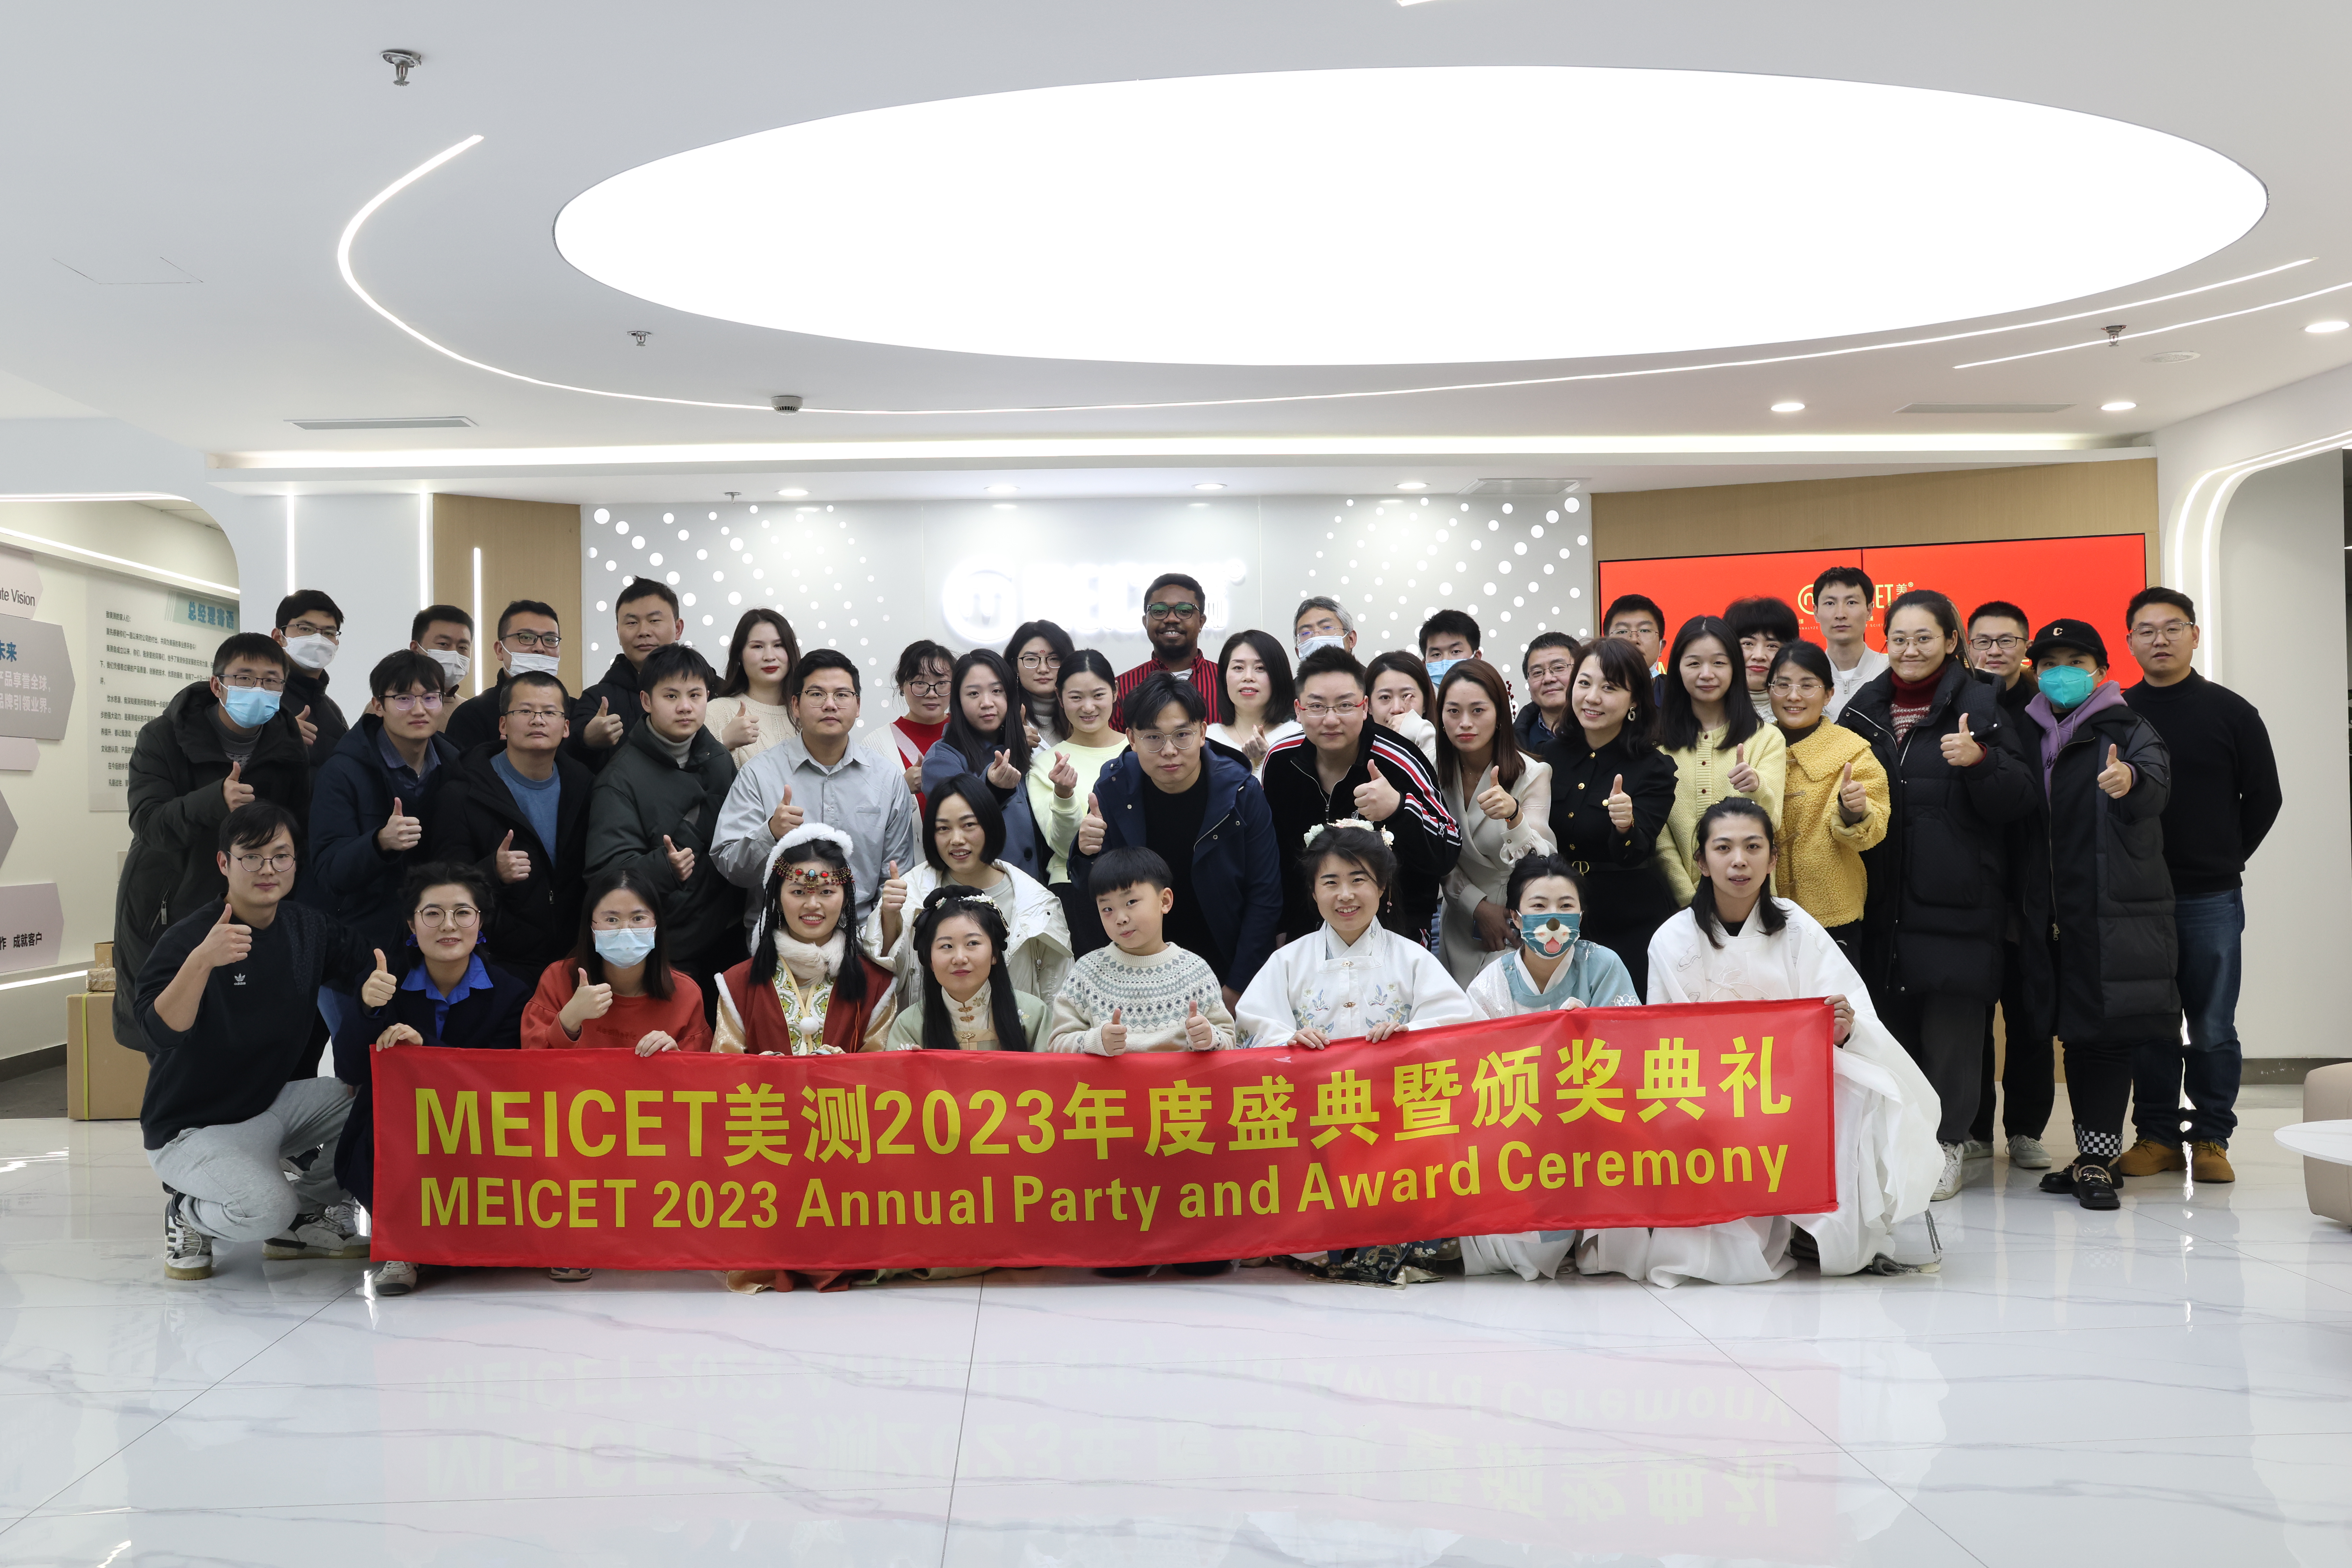 Festa annuale MEICET 2023 e cerimonia di premiazione